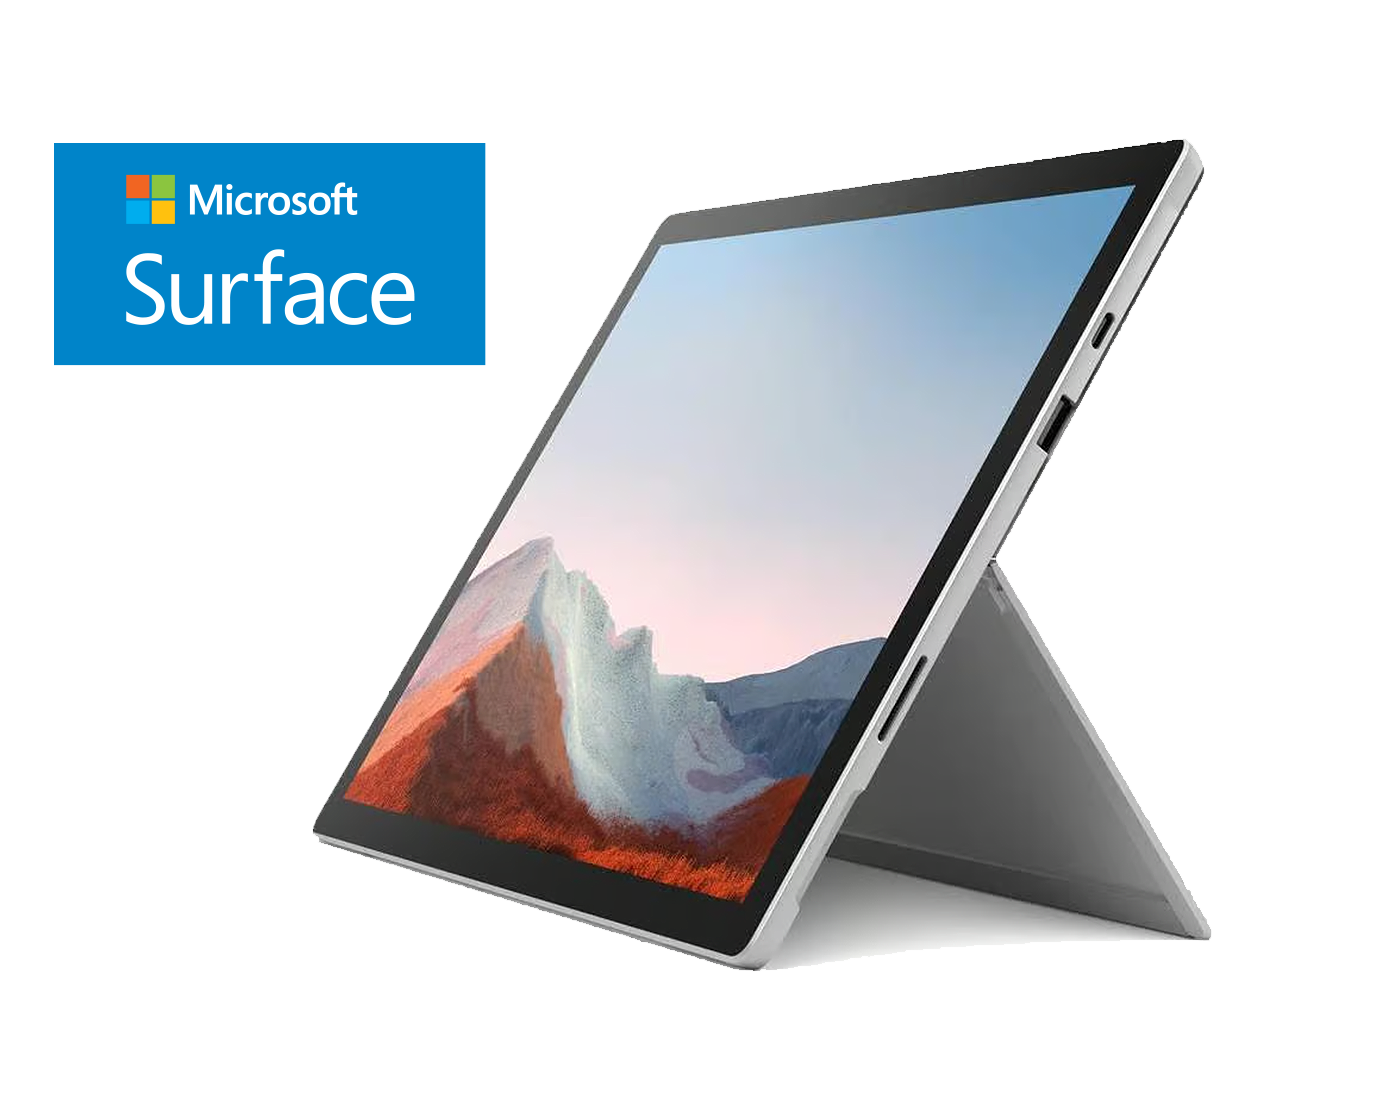 Microsoft Surface Pro 7 / Core I5 1035g4 a 1,1ghz / 8Gb ram / 128gb ssd / 12" / Teclado desmontable / Win 10 Pro "Liquidación"